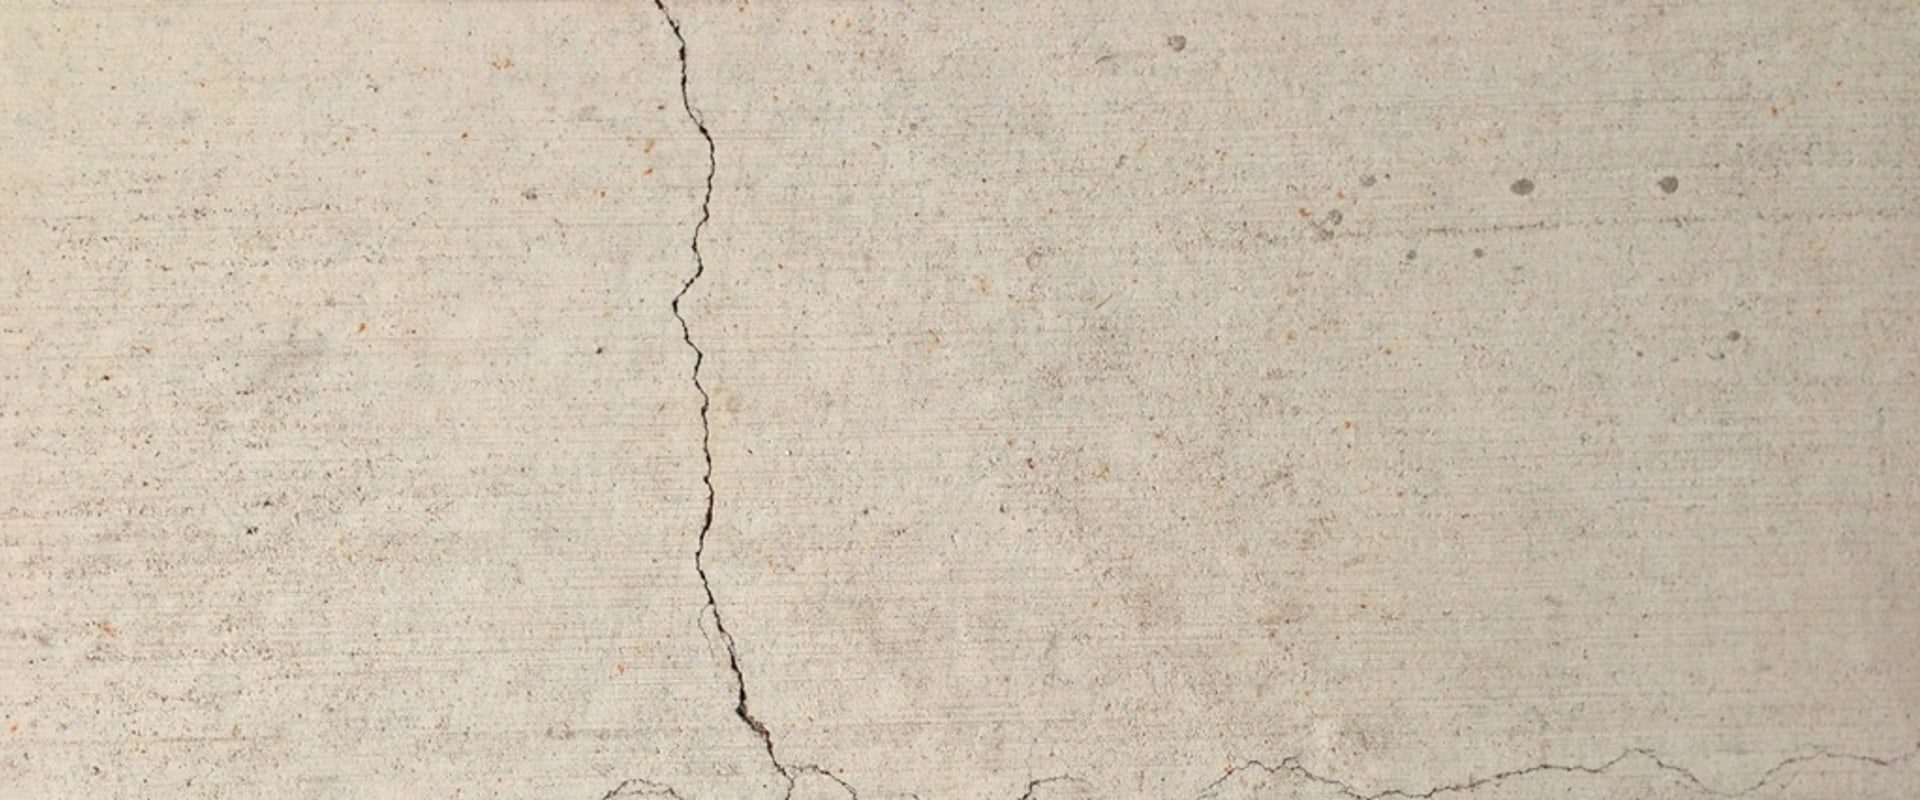 How to Repair Fine Cracks in Concrete